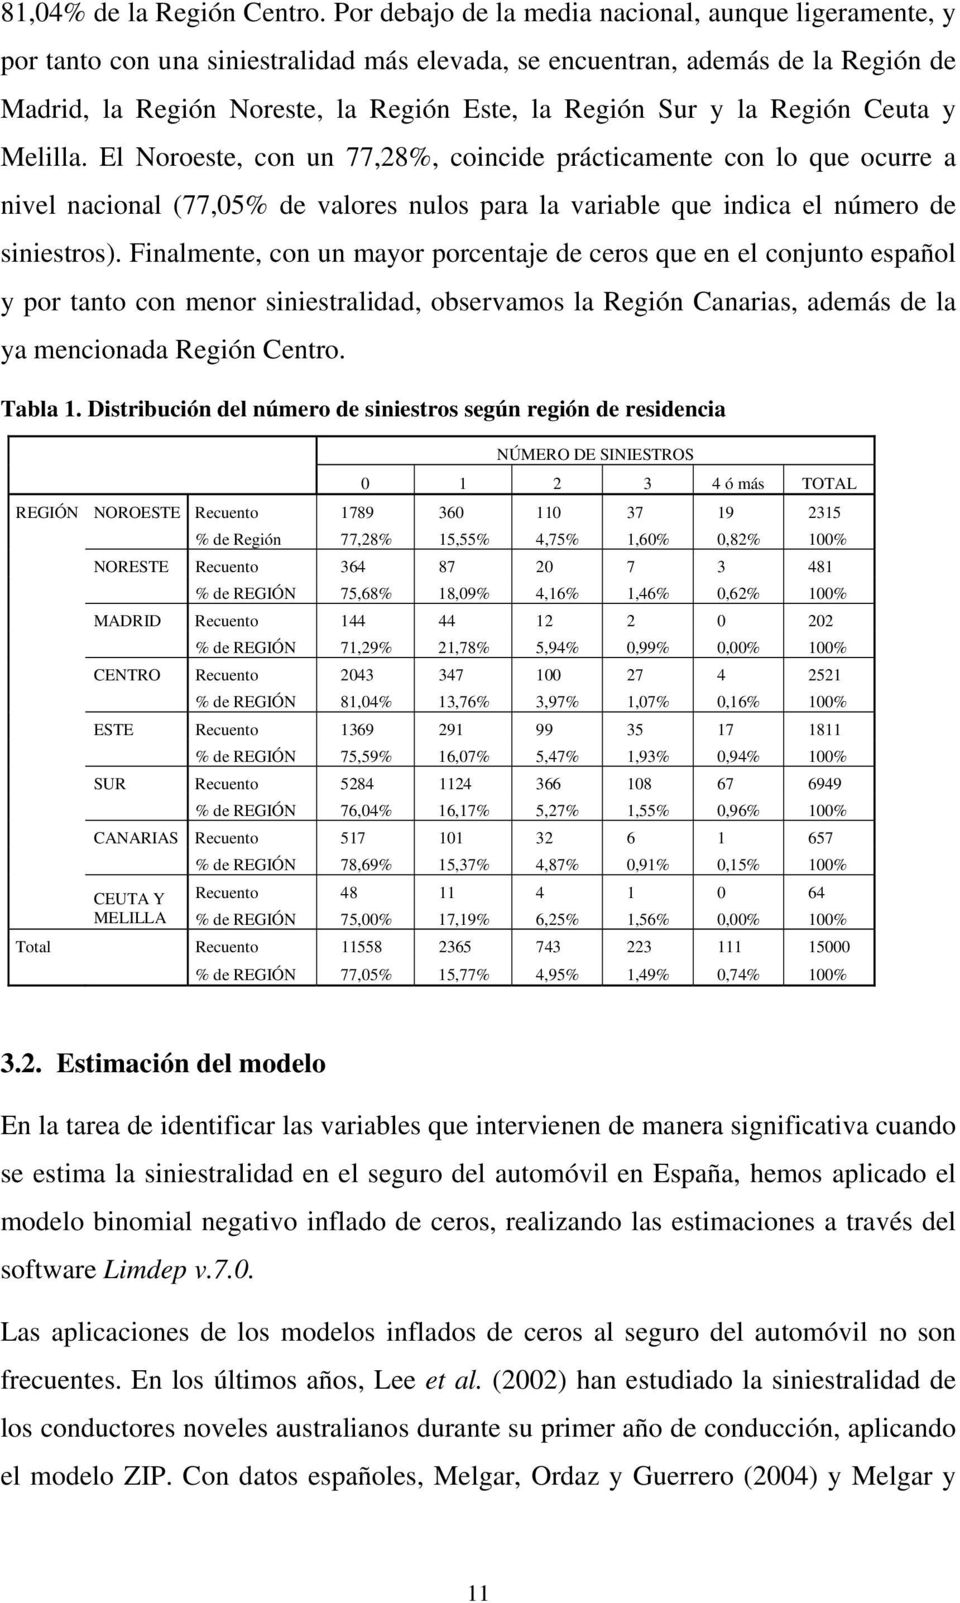 Ceuta y Mellla. El Noroeste, con un 77,28%, concde práctcamente con lo que ocurre a nvel naconal (77,05% de valores nulos para la varable que ndca el número de snestros).